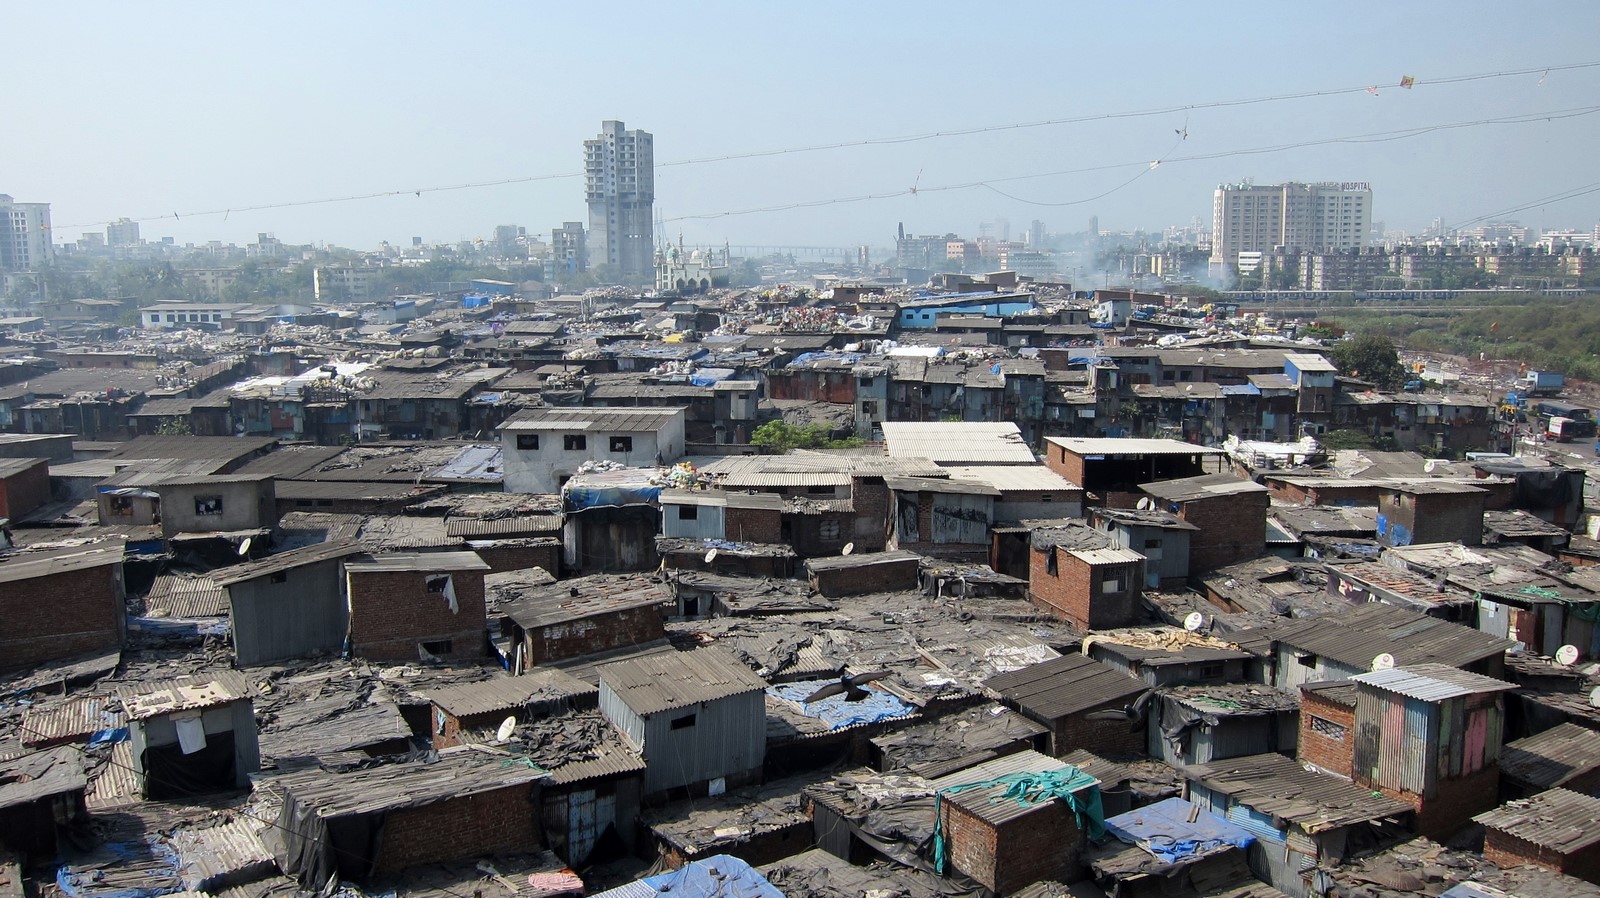 10 Metropolitan cities with slums (ex. Mumbai with dharavi) - Sheet1